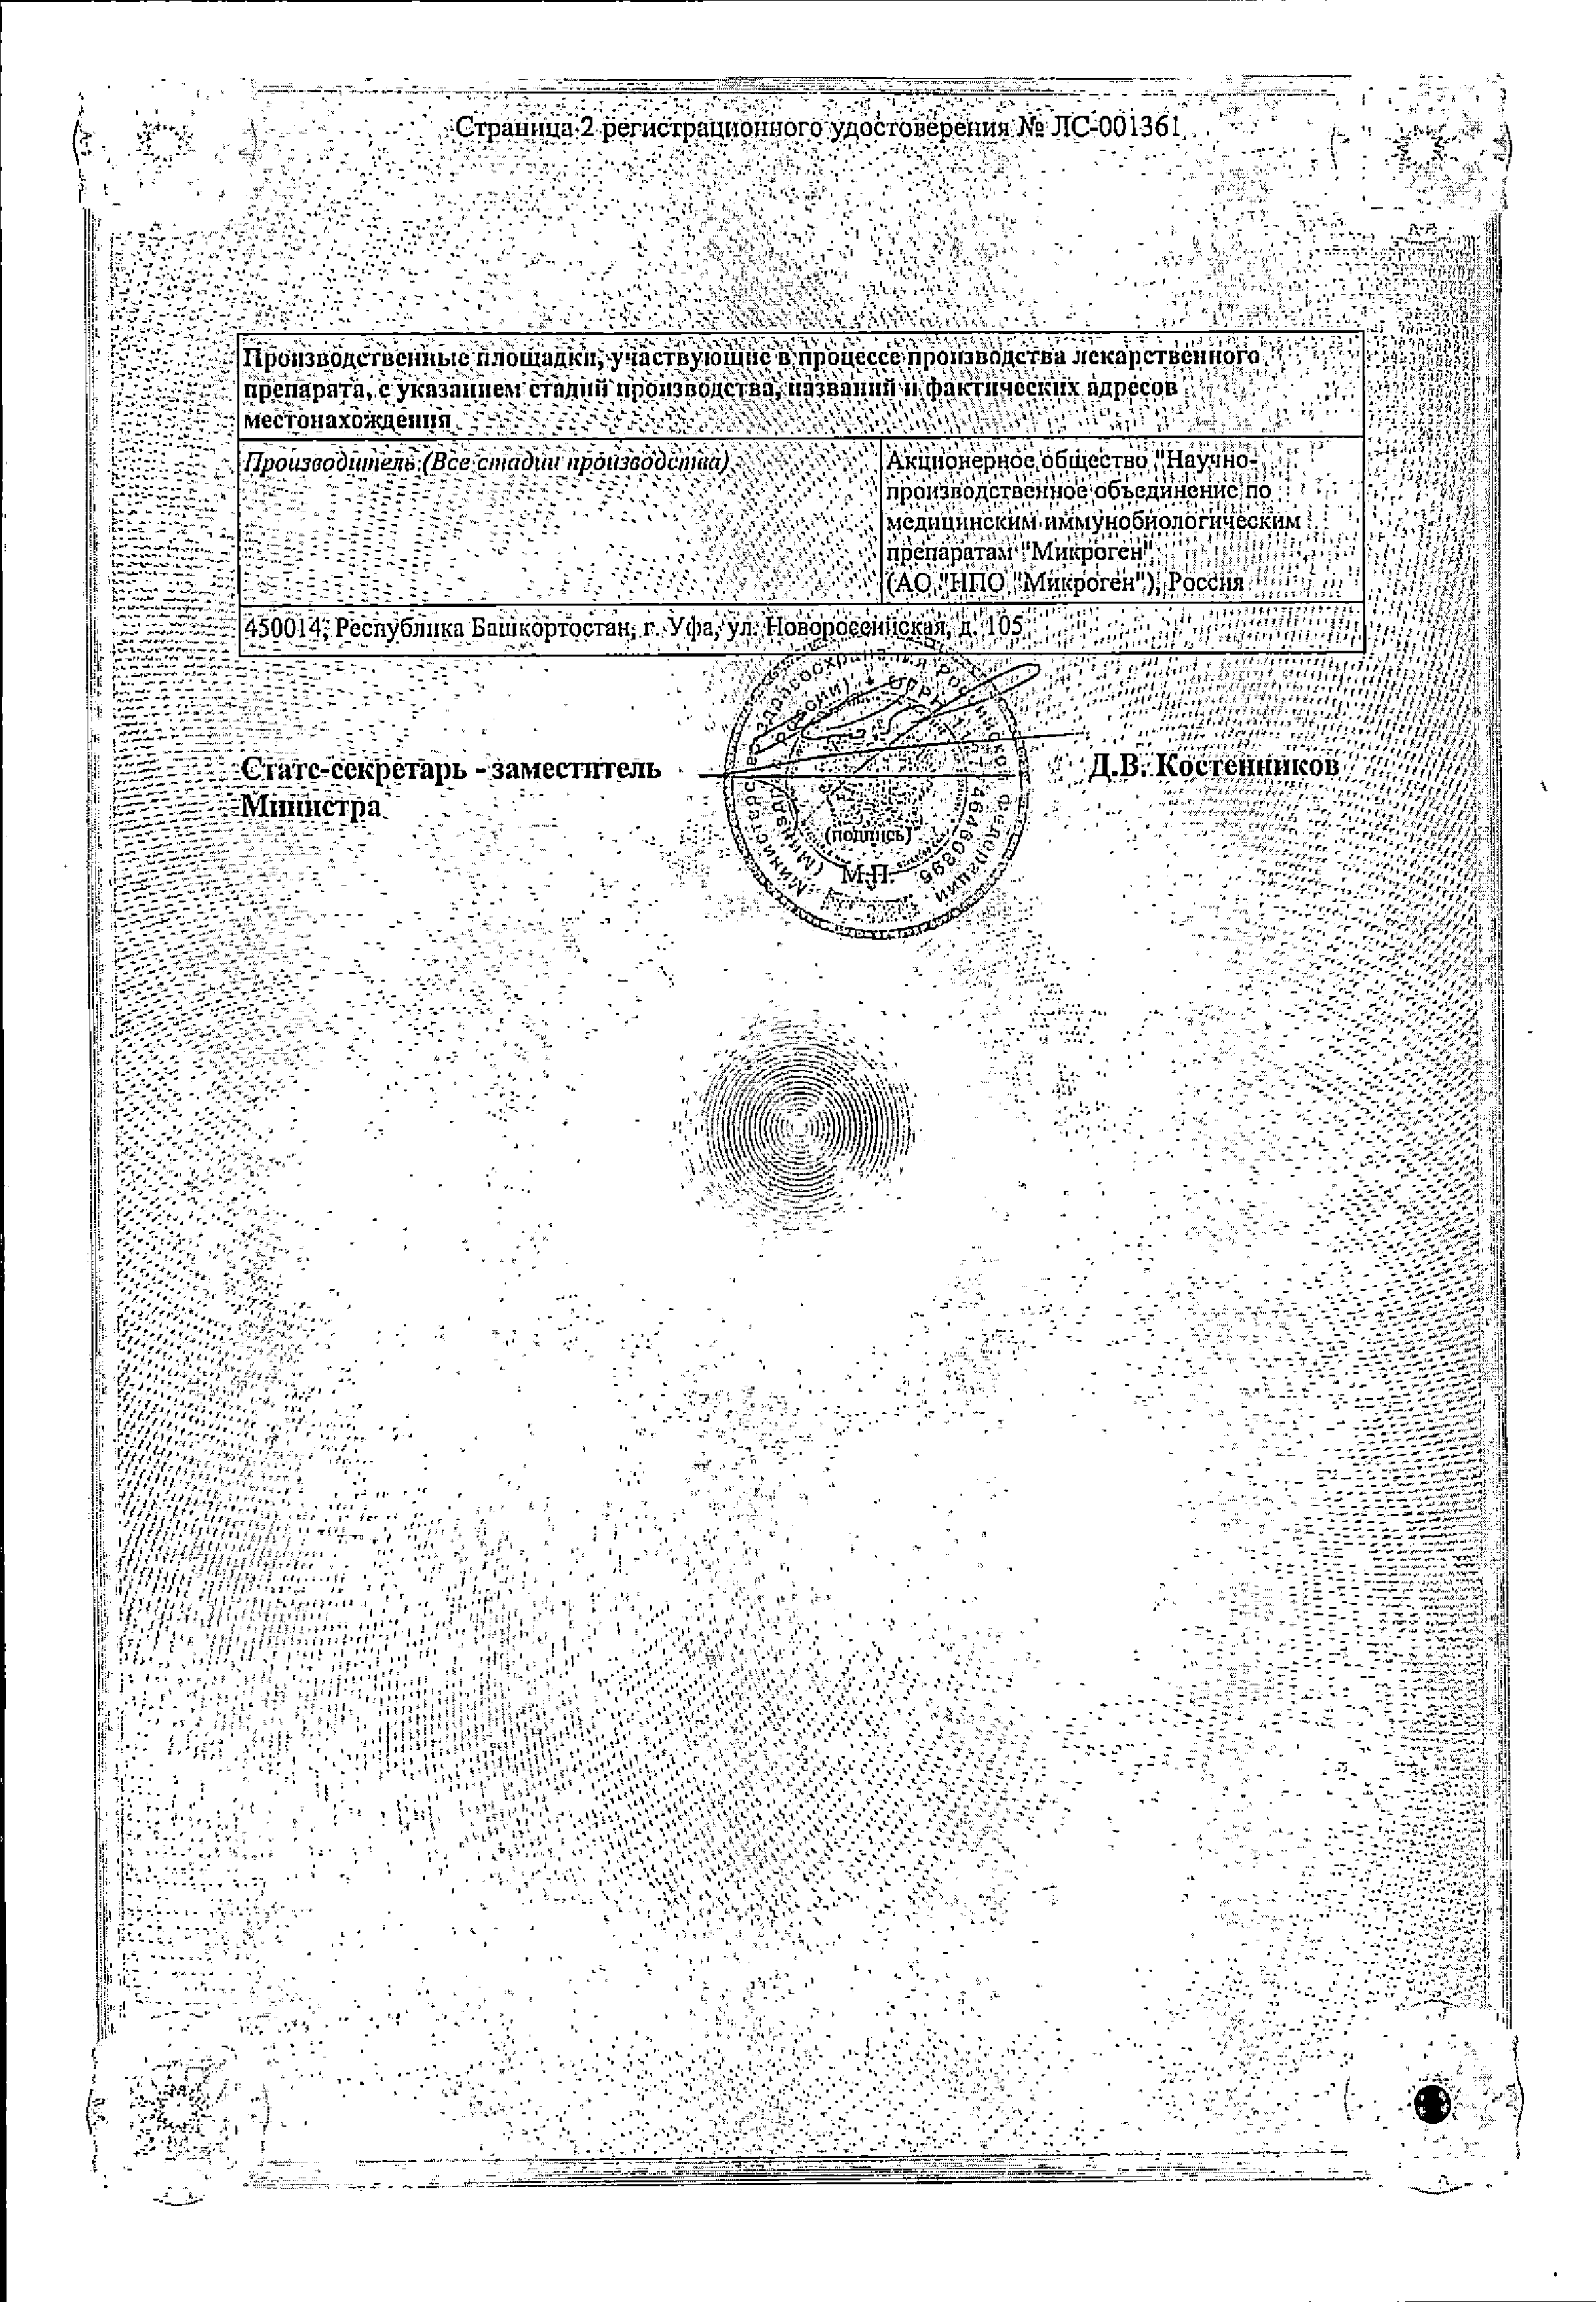 Бактериофаг клебсиелл поливалентный очищенный сертификат